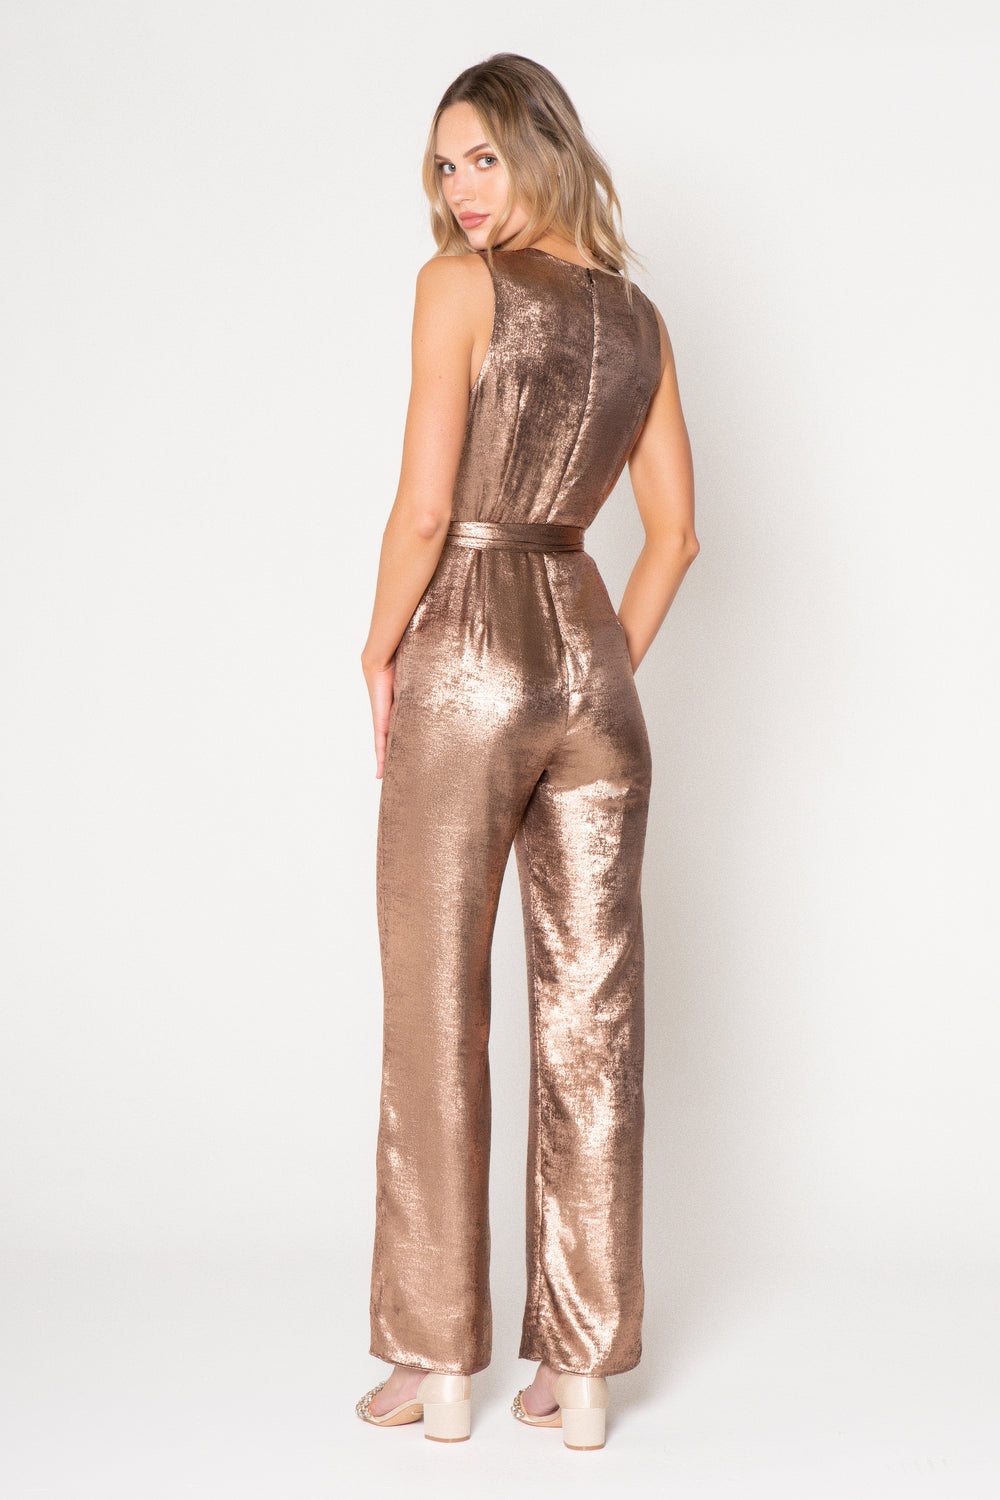 Rose Gold Metallic Sleeveless Jumpsuit - Lavender Brown